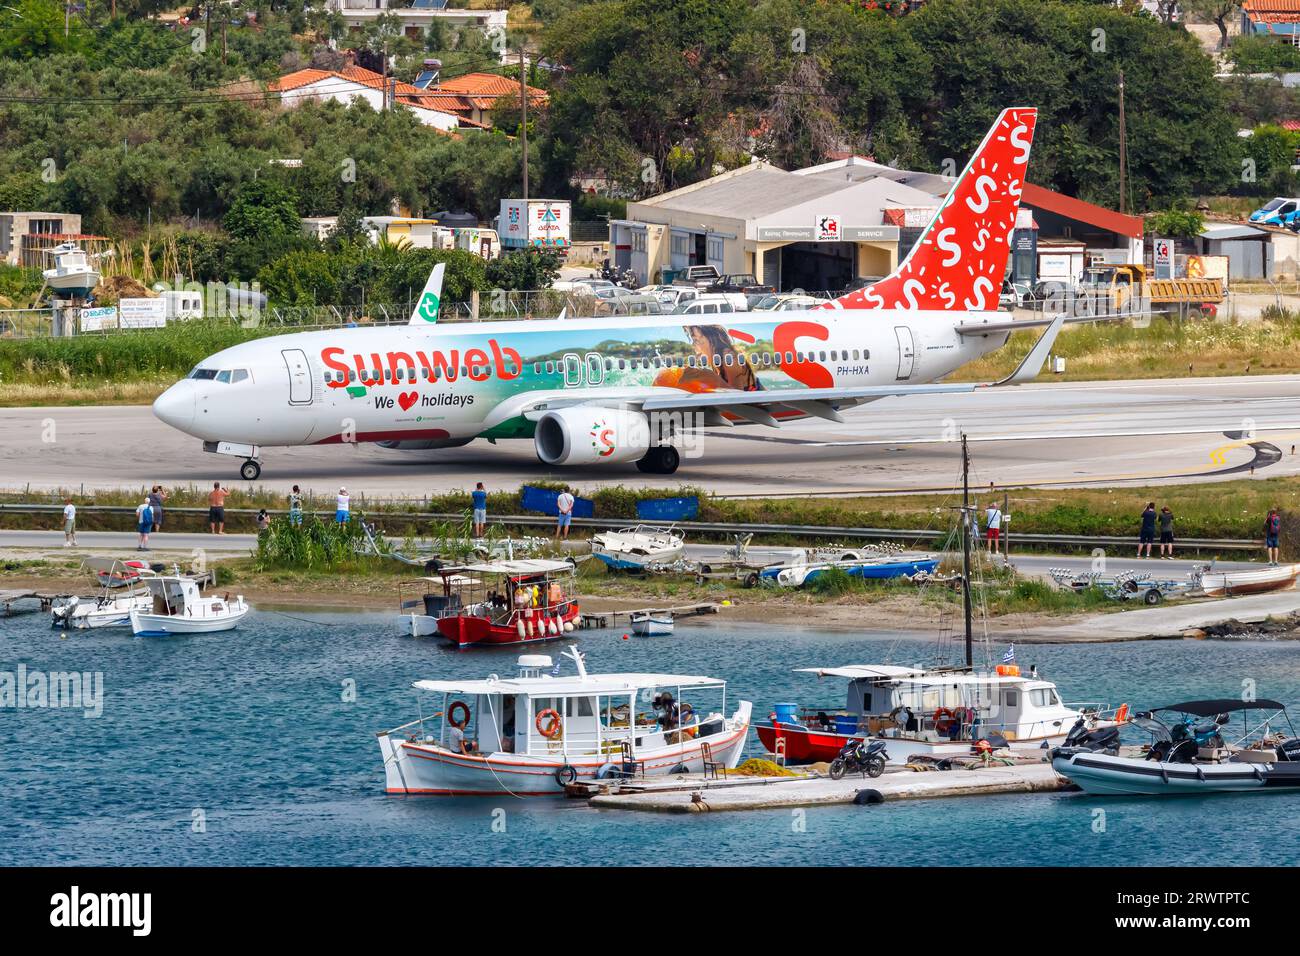 Skiathos, Grecia - 29 giugno 2023: Aereo Transavia Boeing 737-800 nella livrea speciale Sunweb all'aeroporto di Skiathos (JSI) in Grecia. Foto Stock